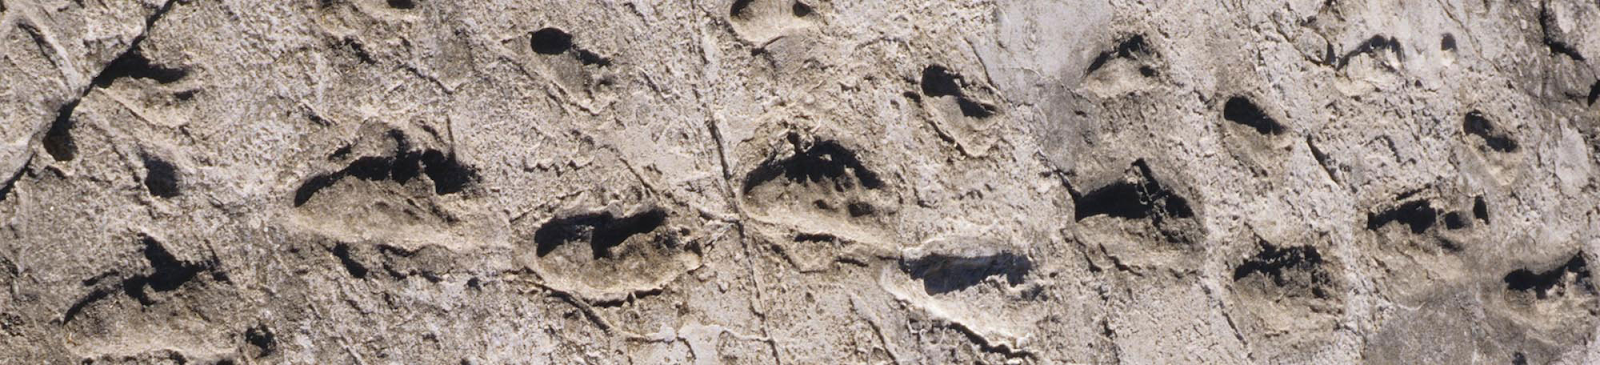 Primeiros passos deixados pela humanidade, há 3,66 milhões de anos, encontrados em Laetoli, Tanzania.